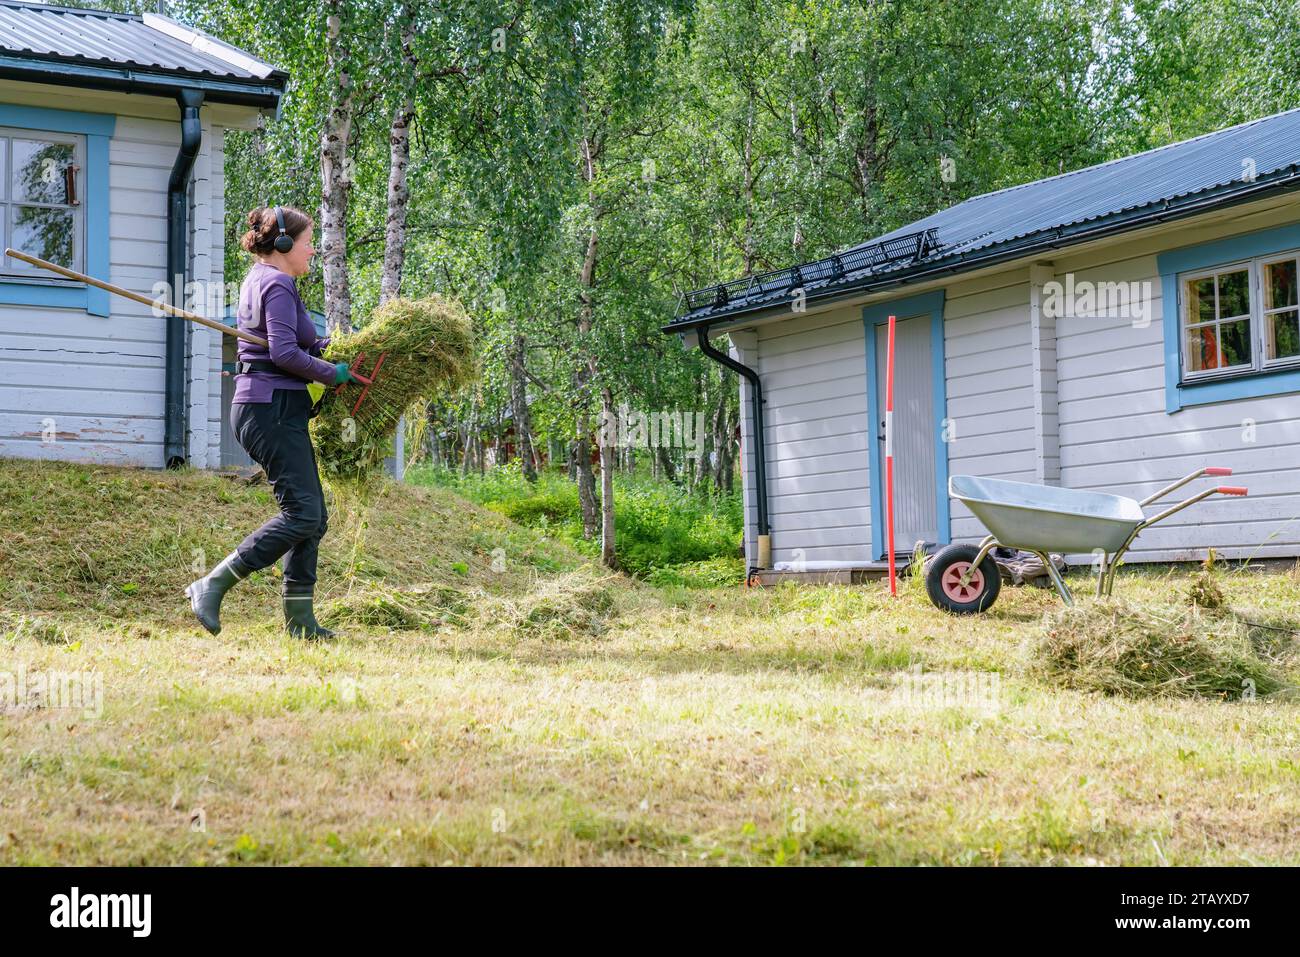 Reife Frauen tragen frisch geschnittenes Gras zur Gartenkarre - Sommergartenarbeit im Sommerhaus. Seitenfoto Stockfoto